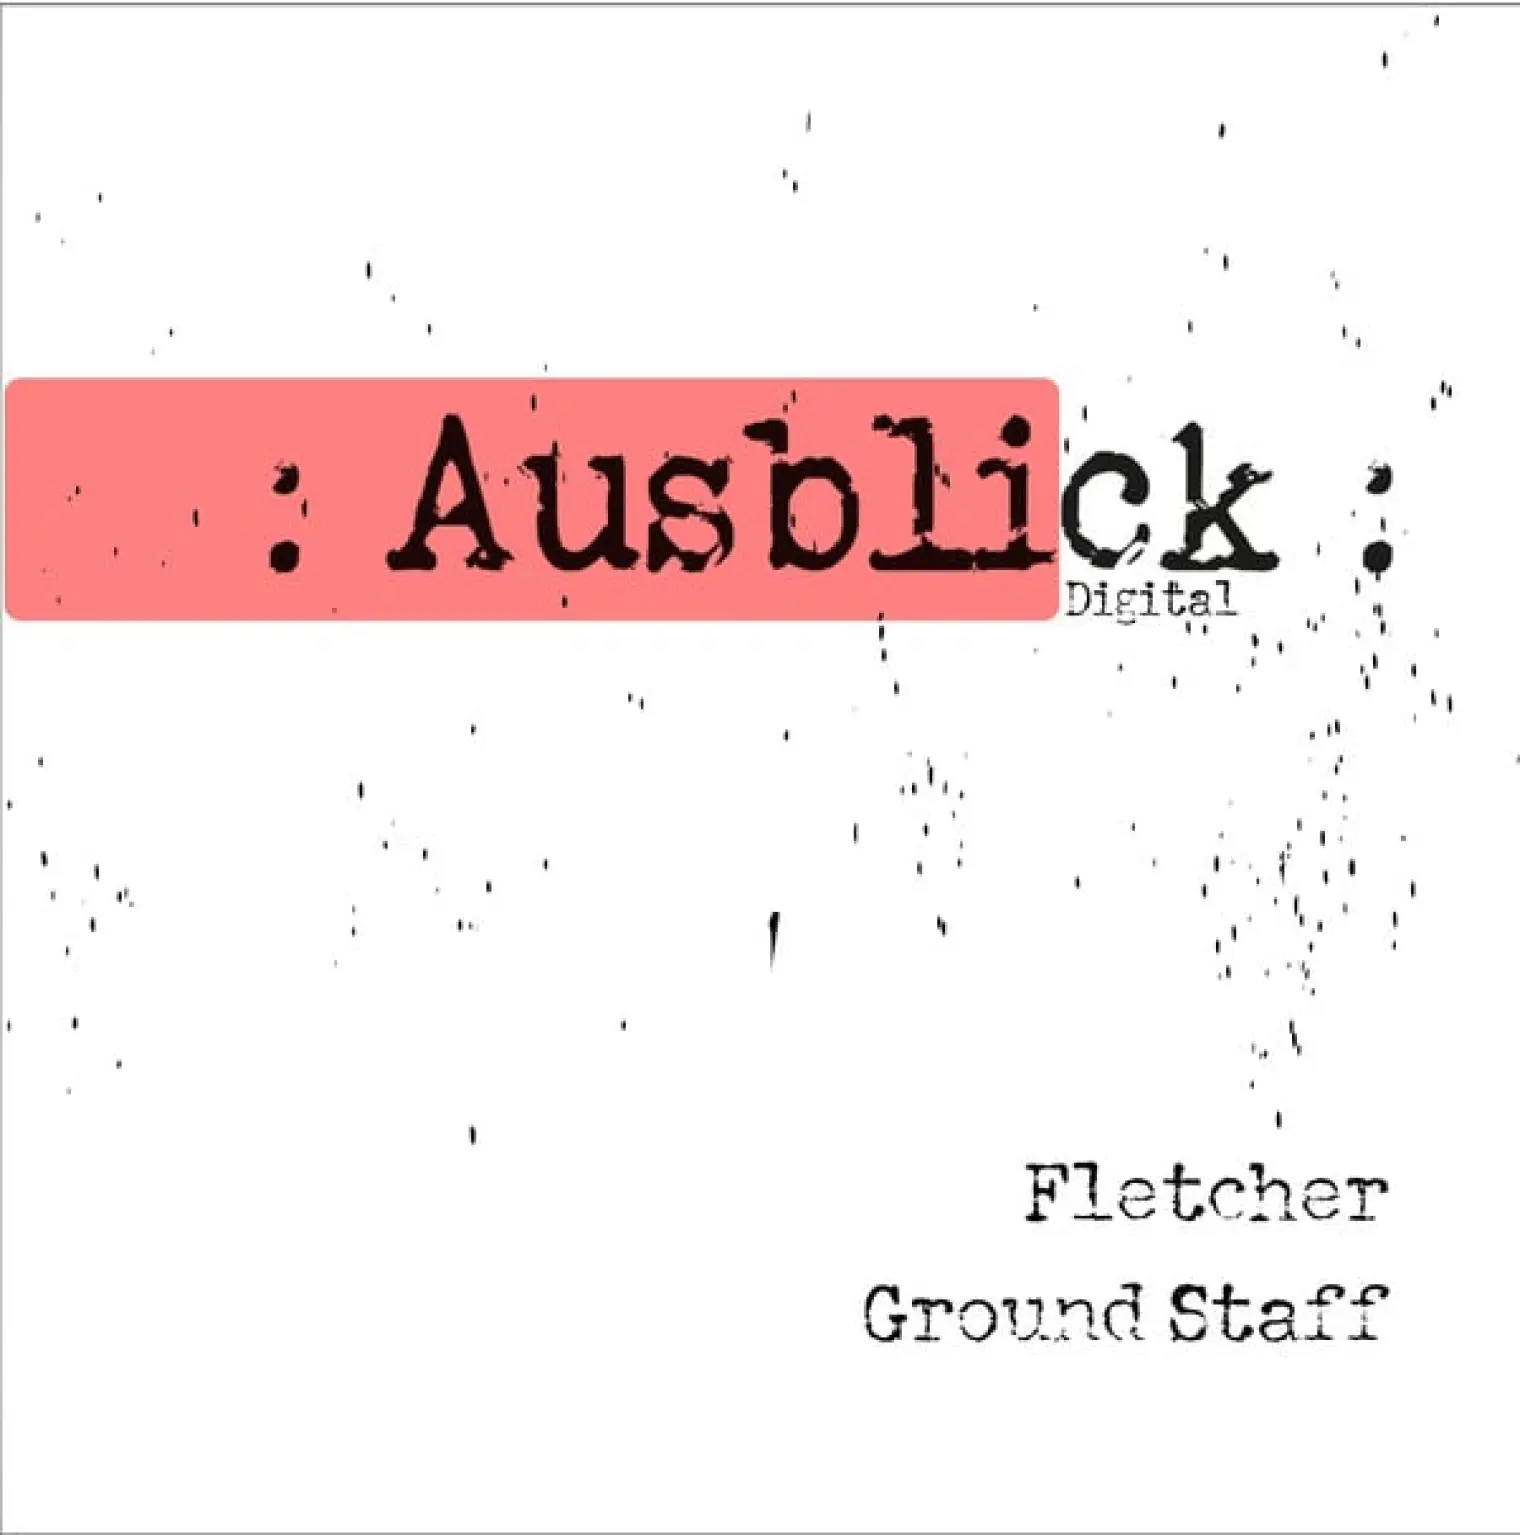 Ground Staff -  Fletcher 